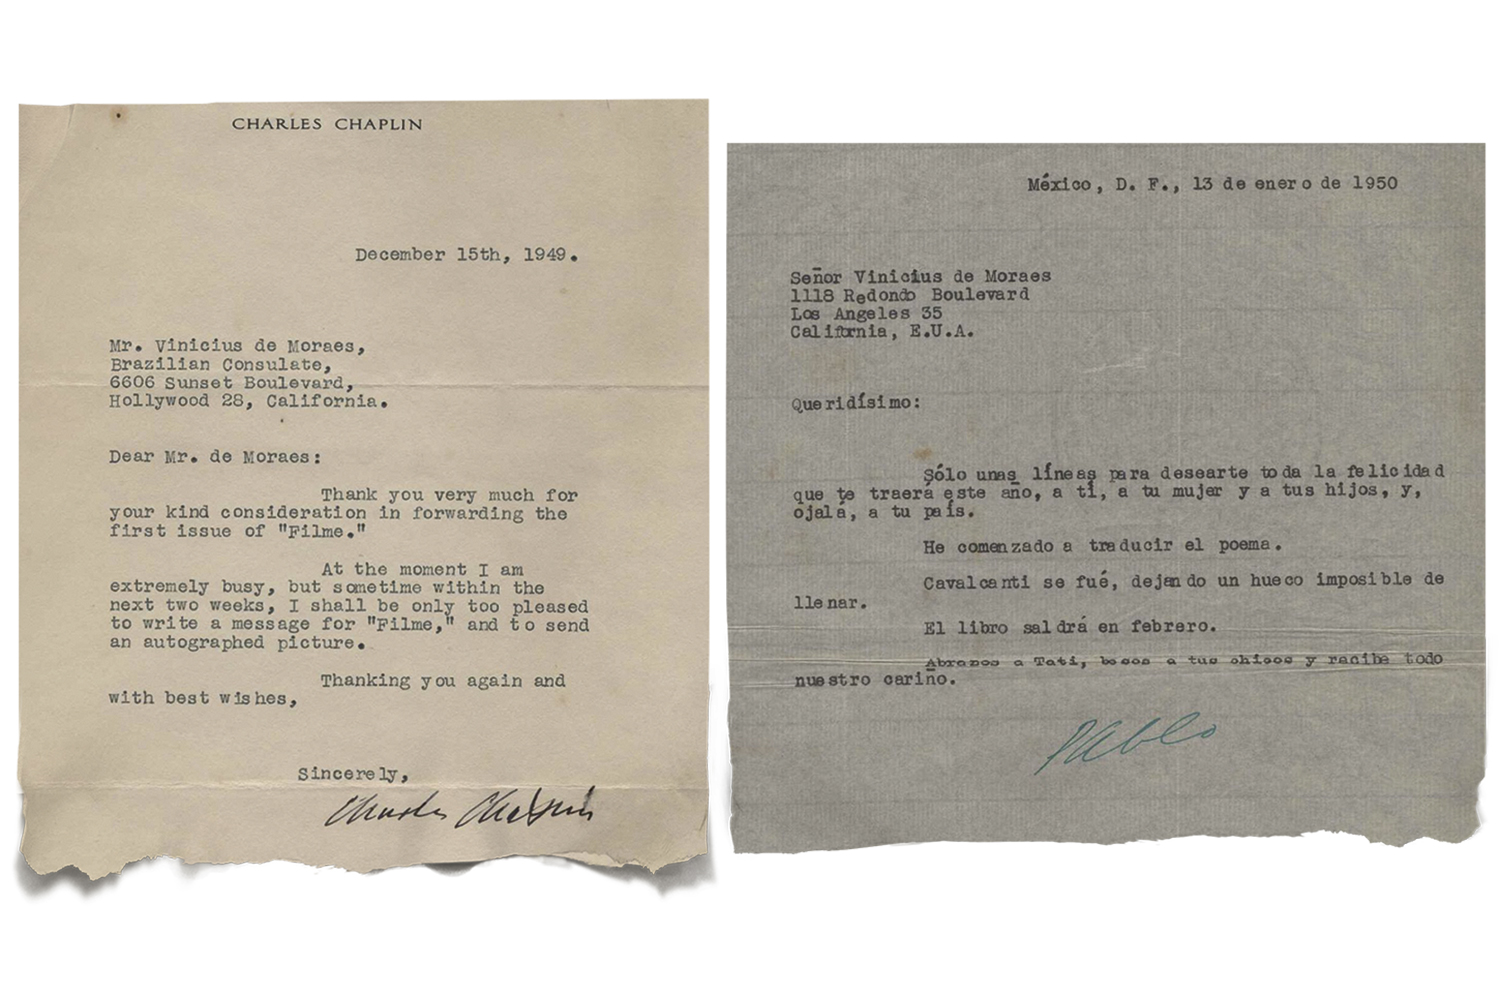 Cartas preciosas: afago do amigo Pablo Neruda e agradecimento de Charles Chaplin -